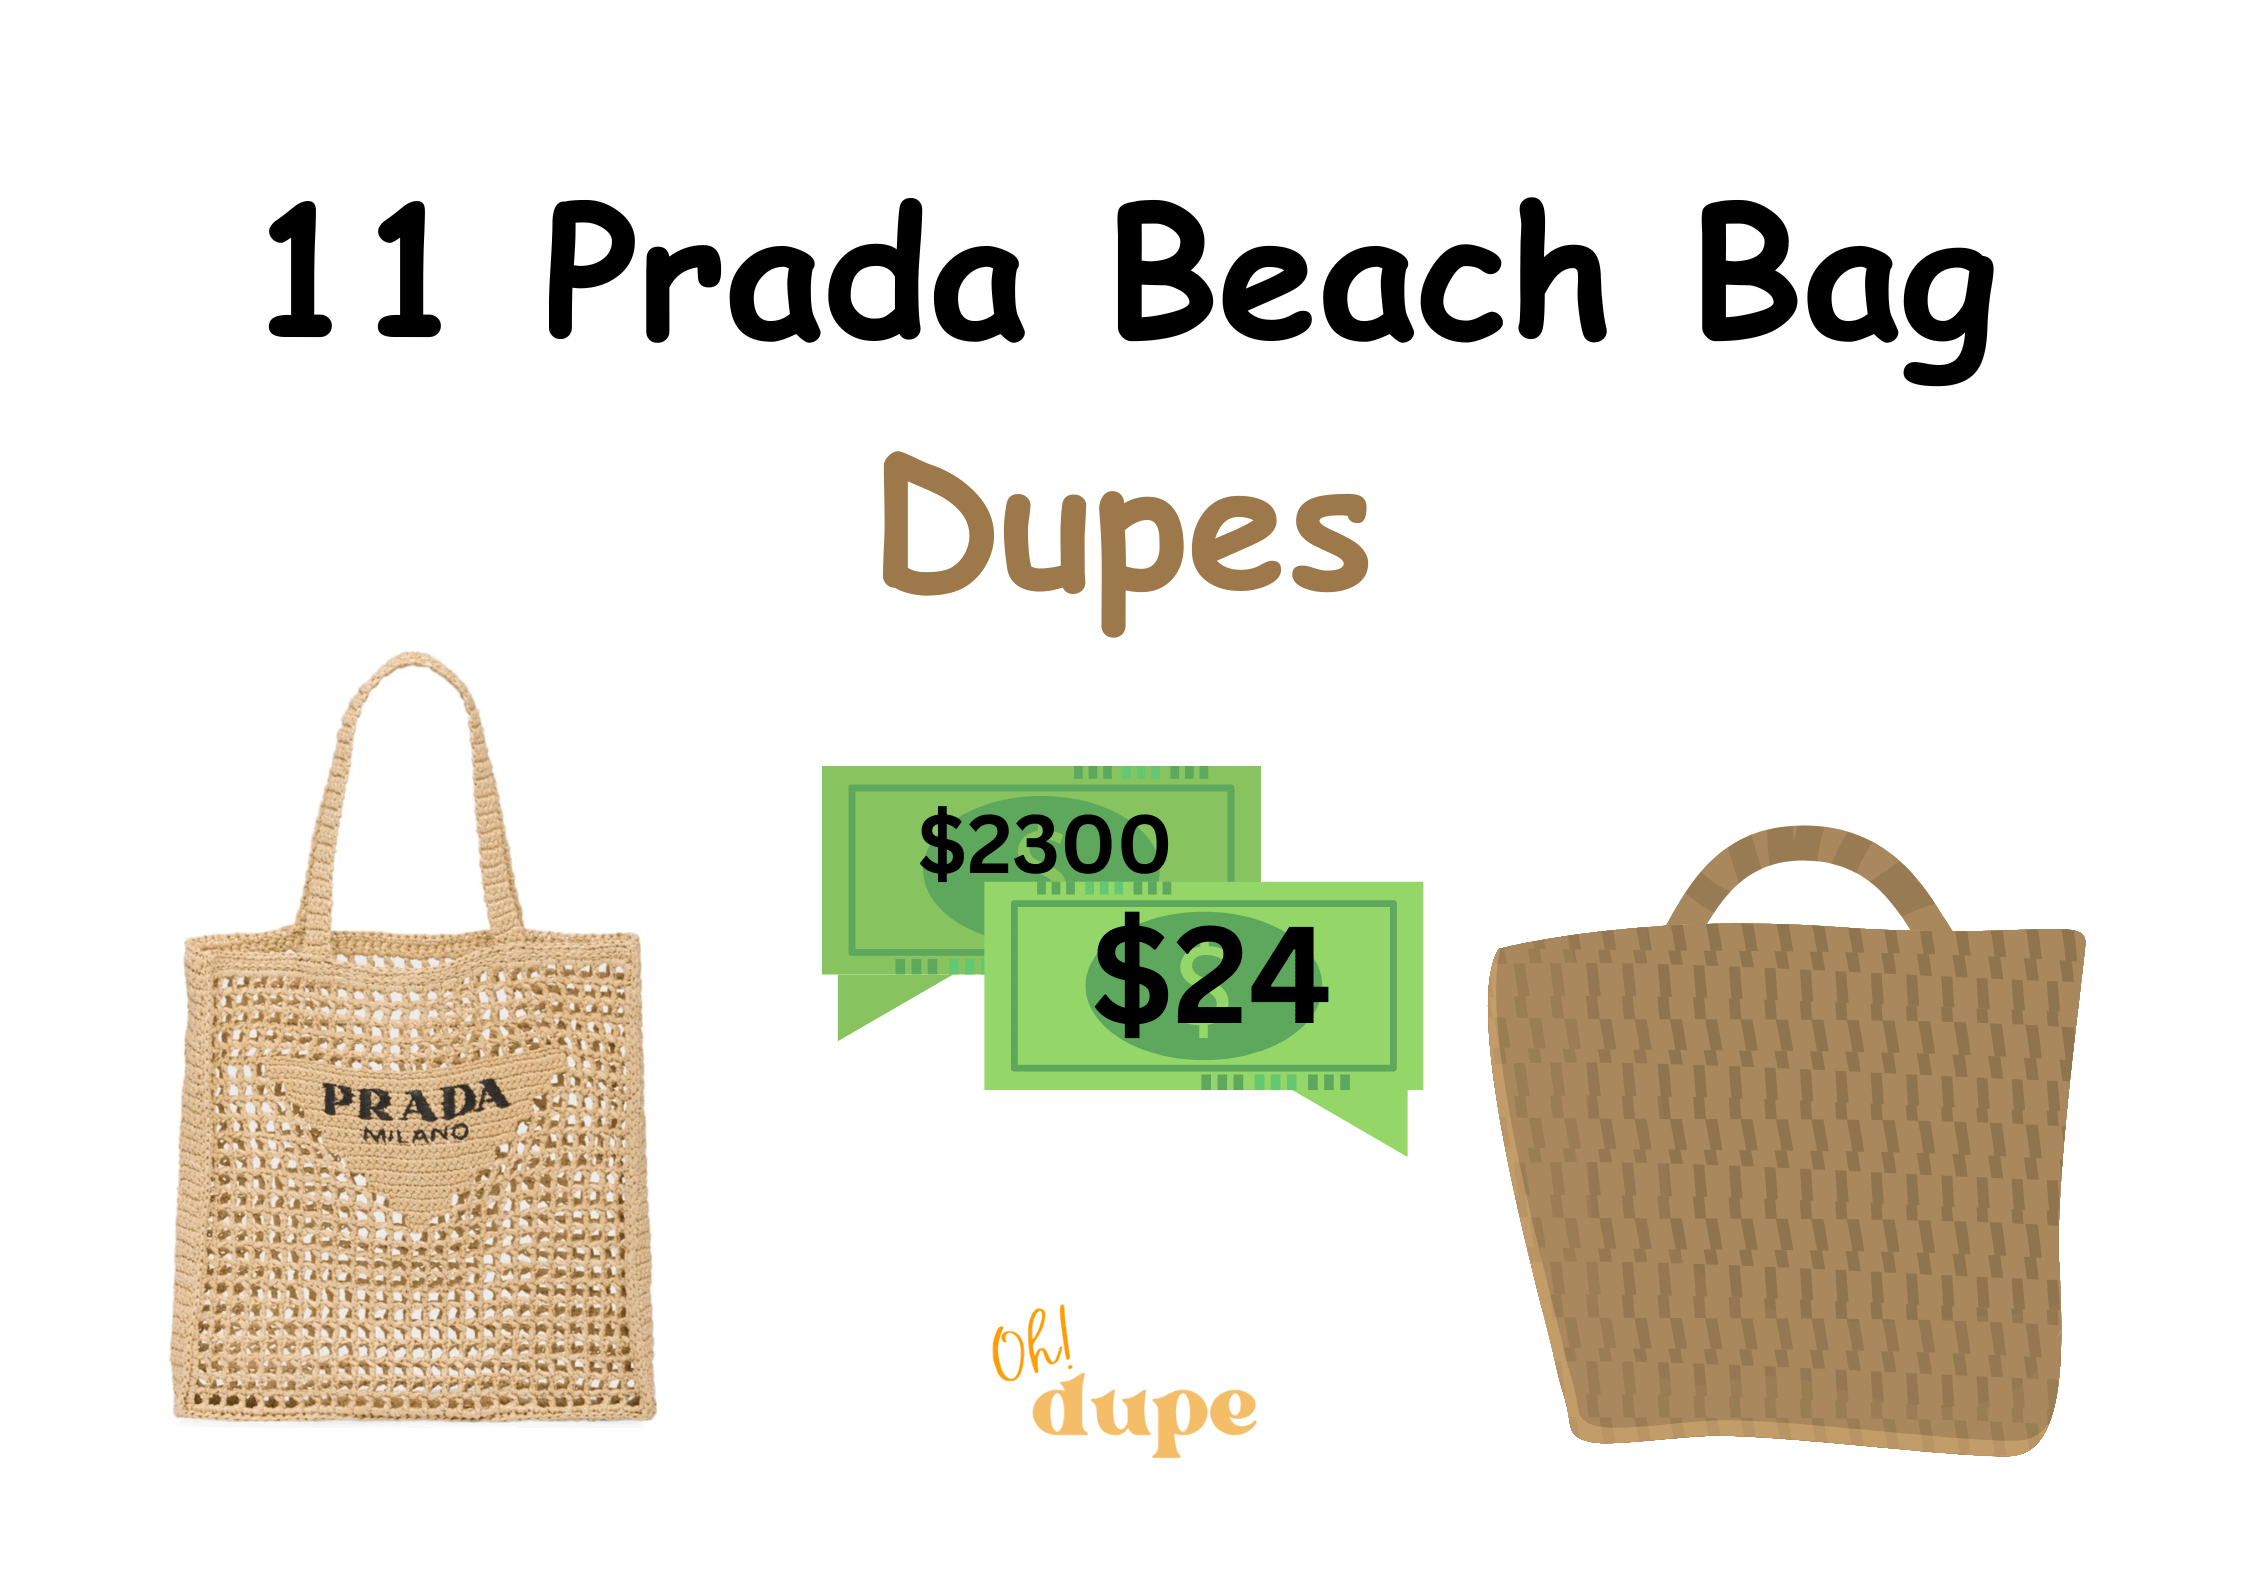 Prada Beach Bag Dupe